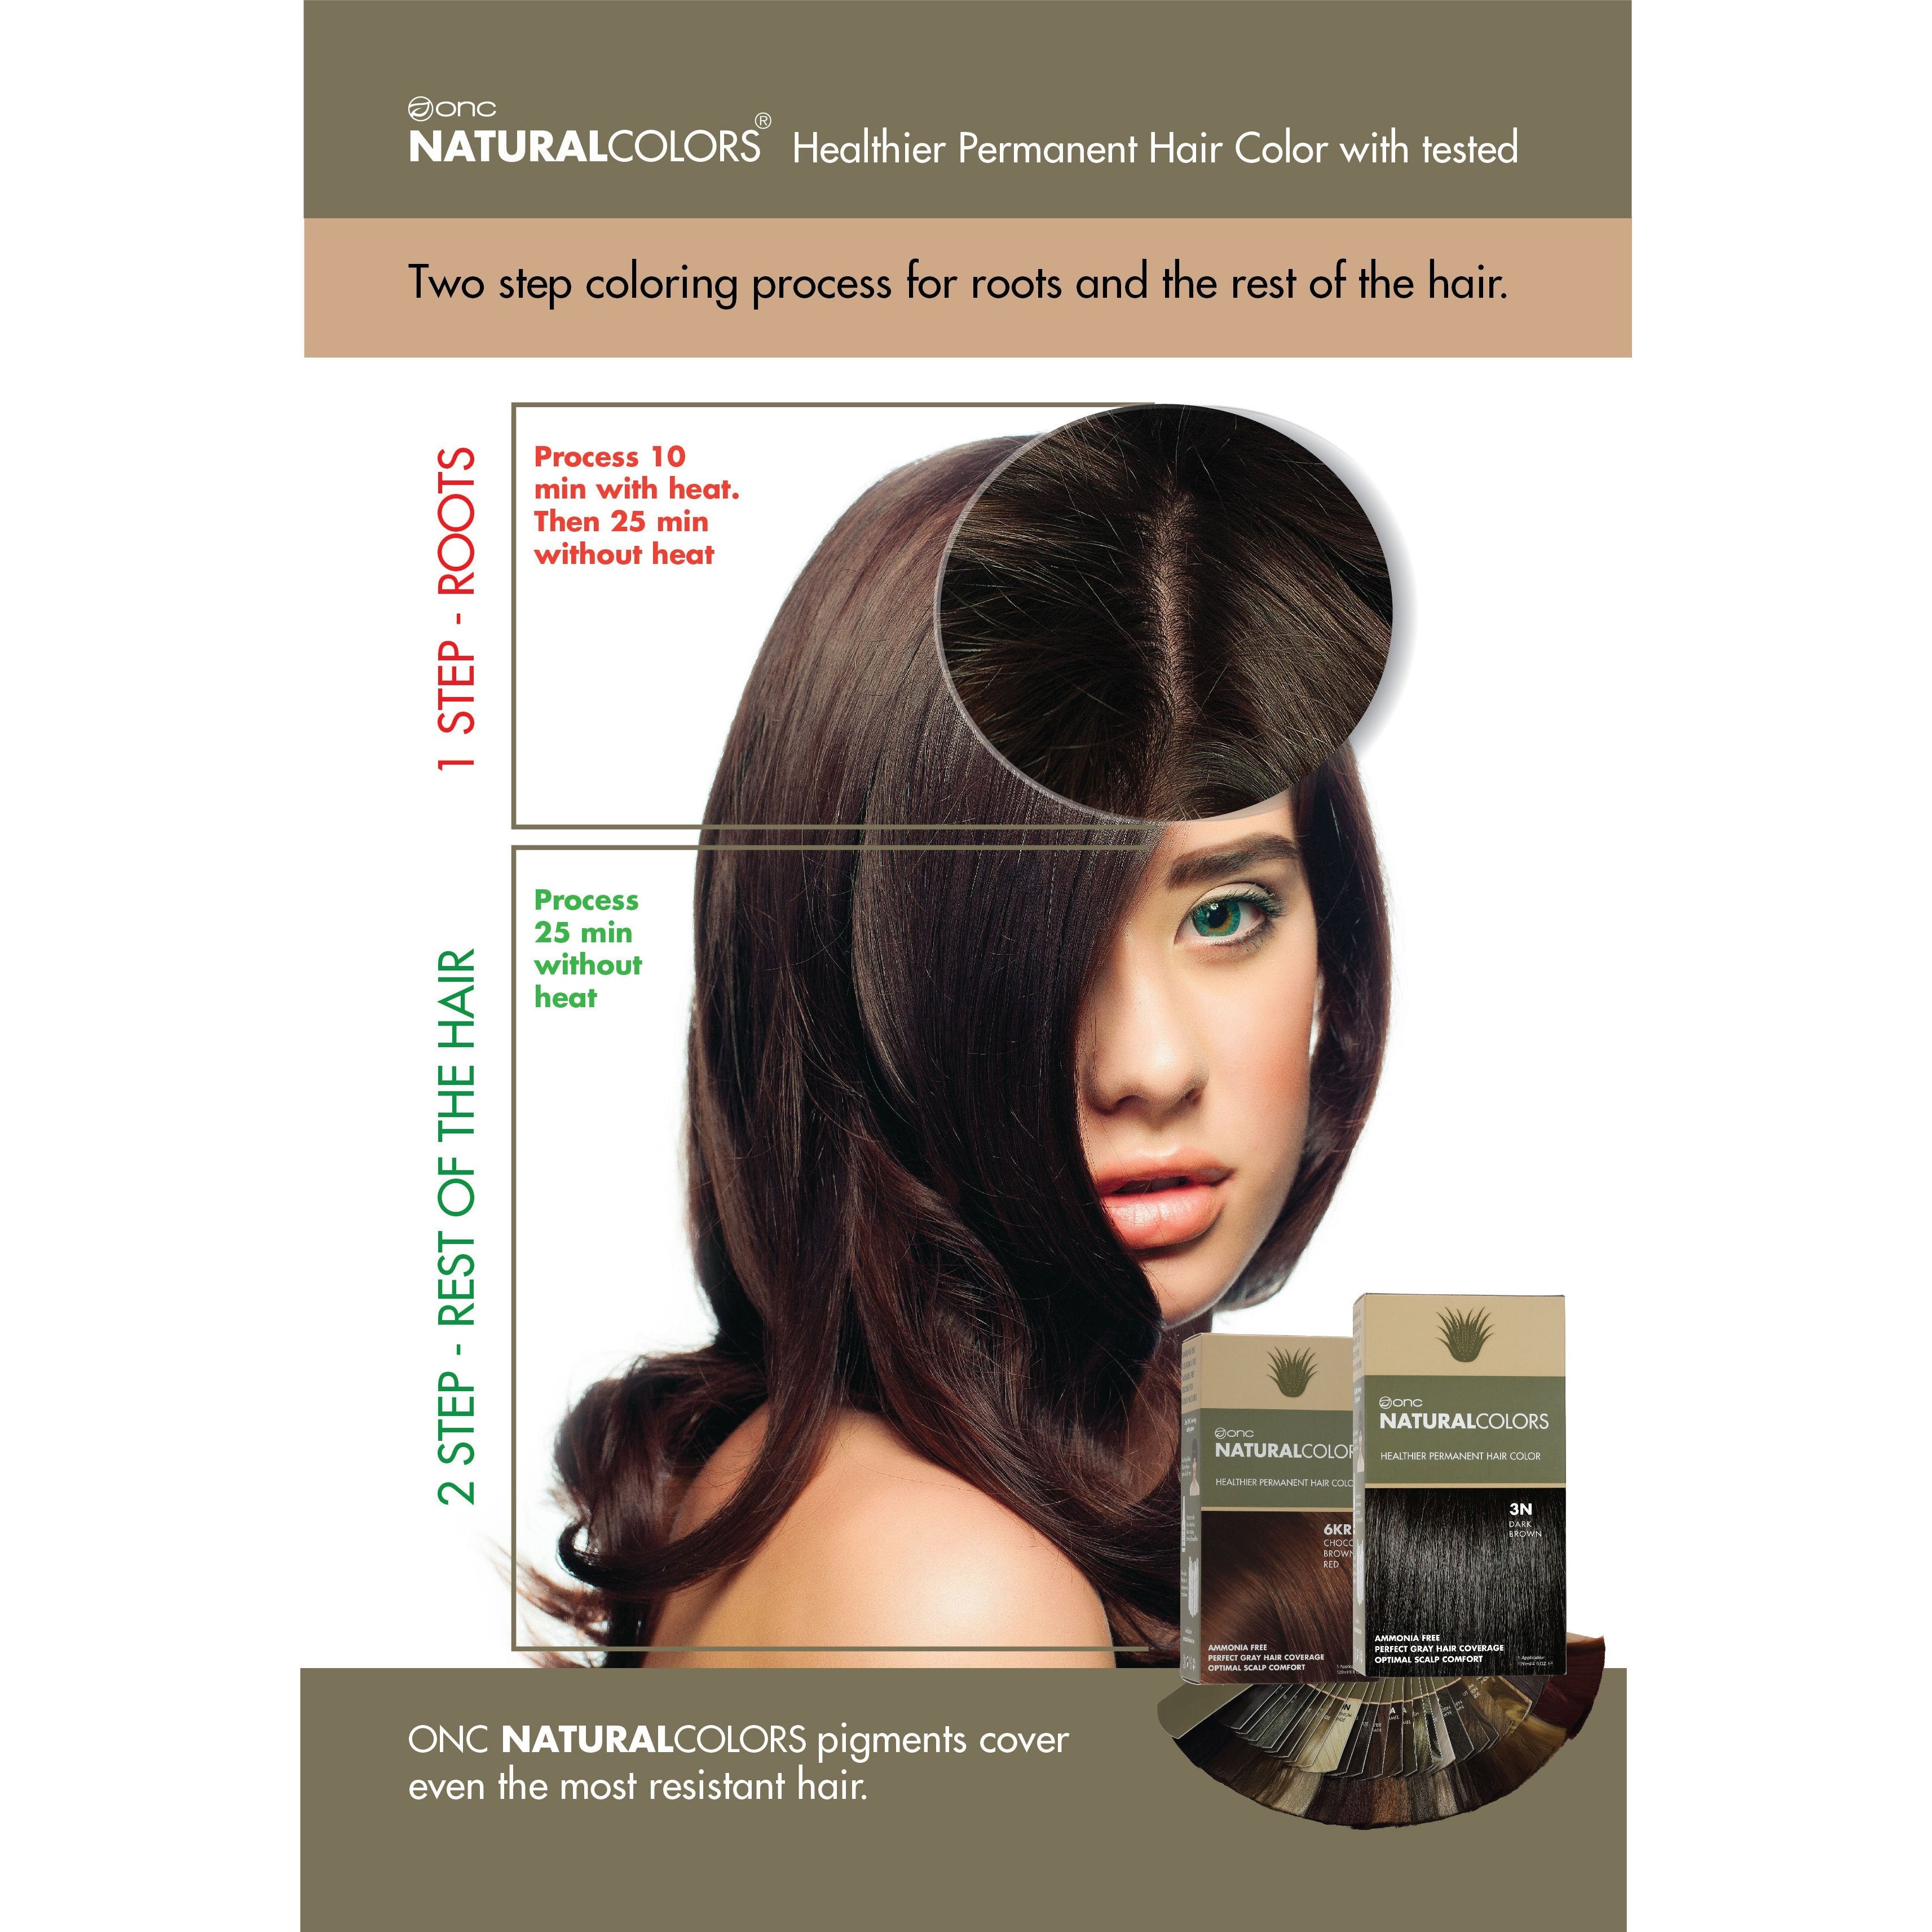 6G Hazelnut Brown Heat Activated Hair Dye With Organic Ingredients 120 mL / 4 fl. oz.